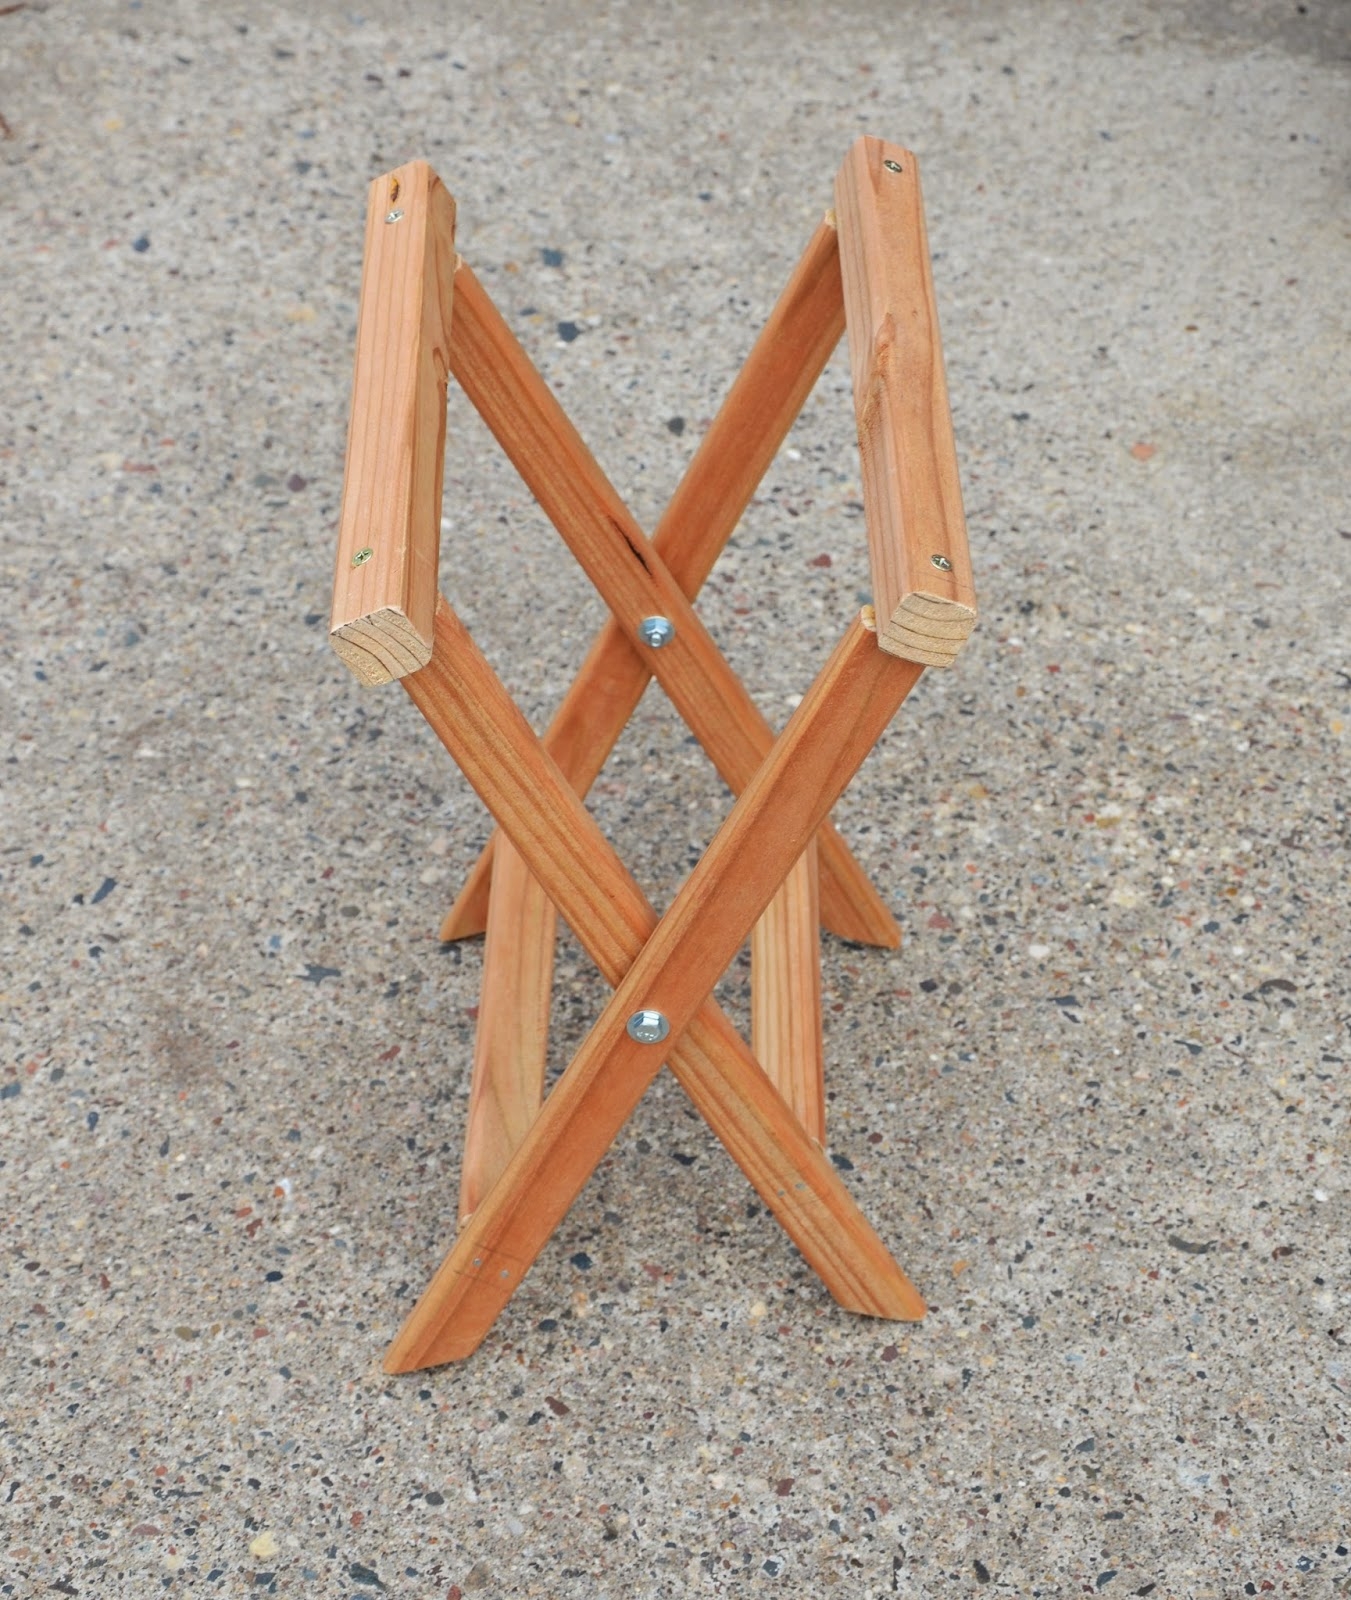 Раскладной стульчик. Самодельный складной табурет. Складной стульчик из дерева. Самодельный раскладной стул. Как сделать складной стул